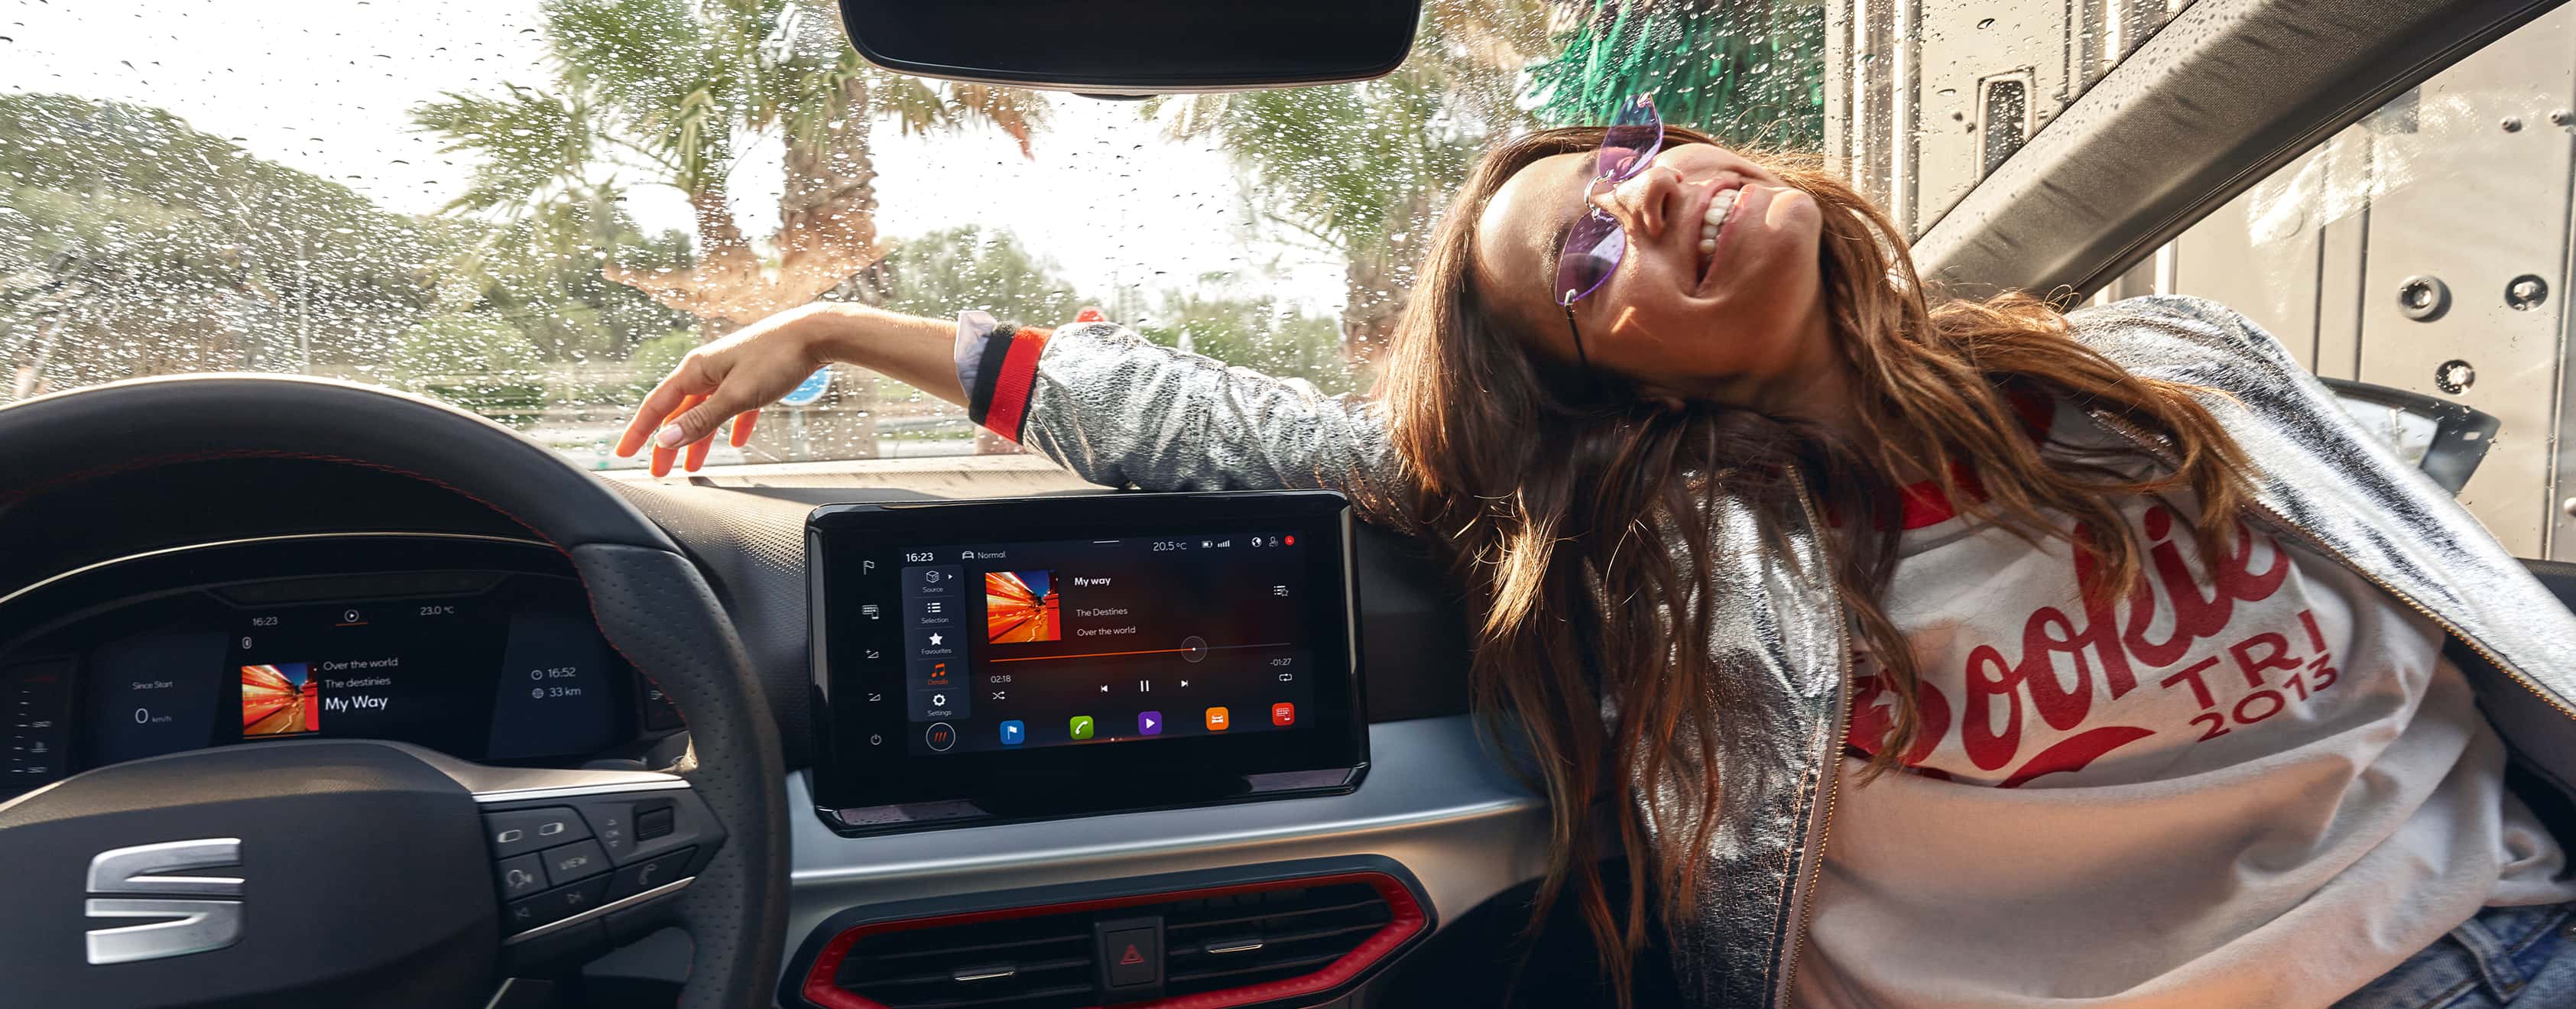 SEAT Ibiza vue intérieure avec le nouvel écran tactile indépendant de 9,2 pouces